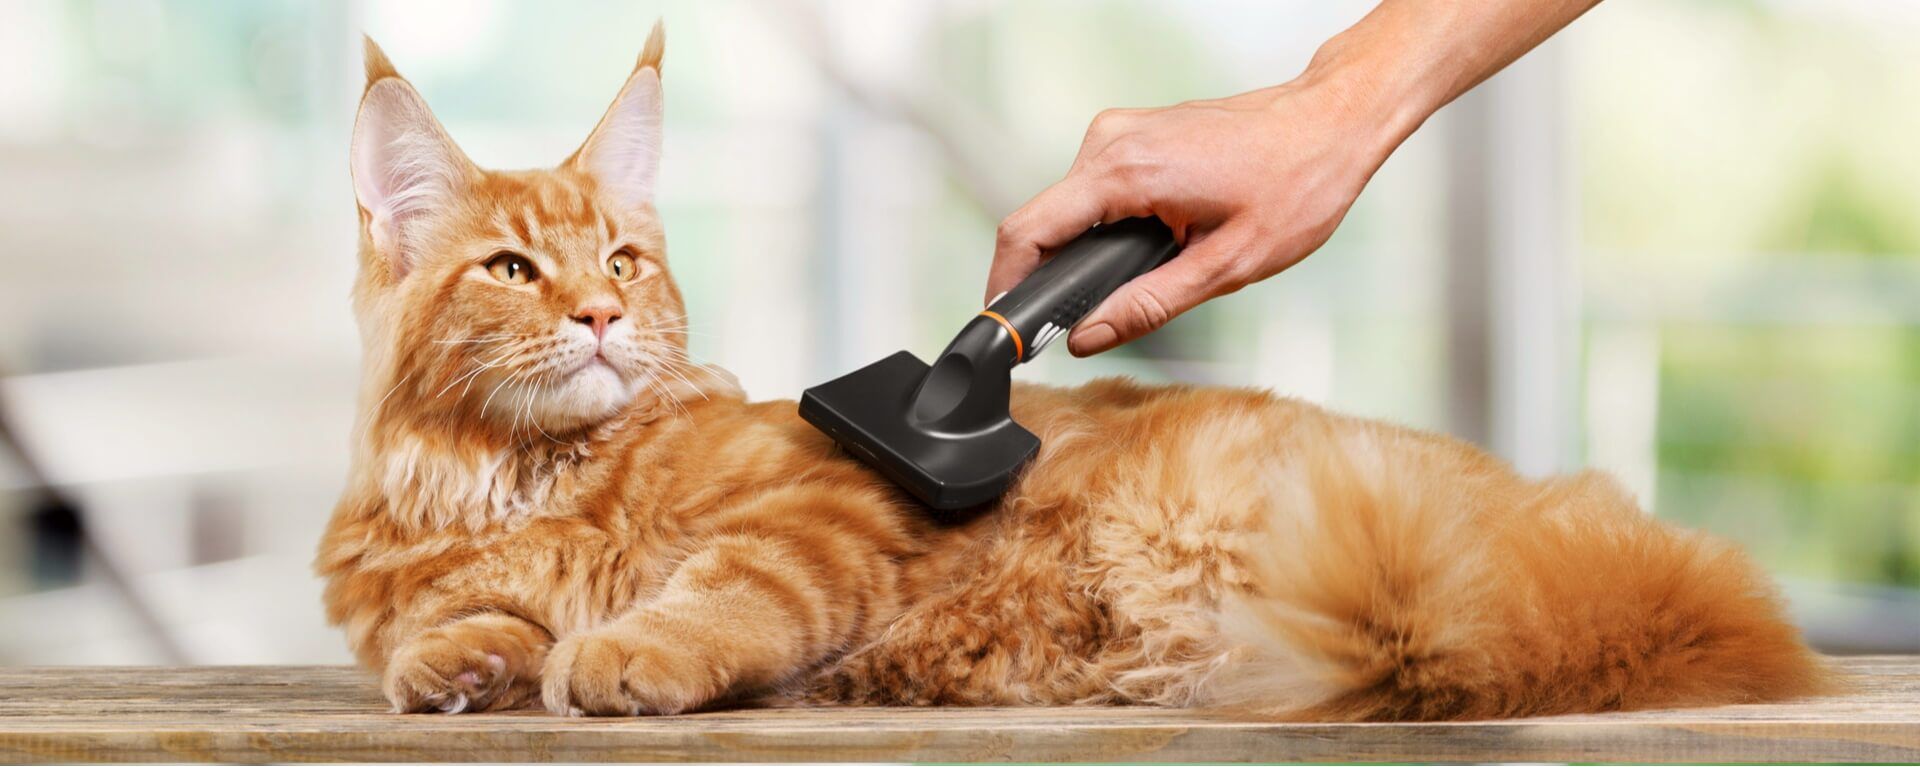 Груминг кошек в домашних условиях: как делать гигиенический груминг